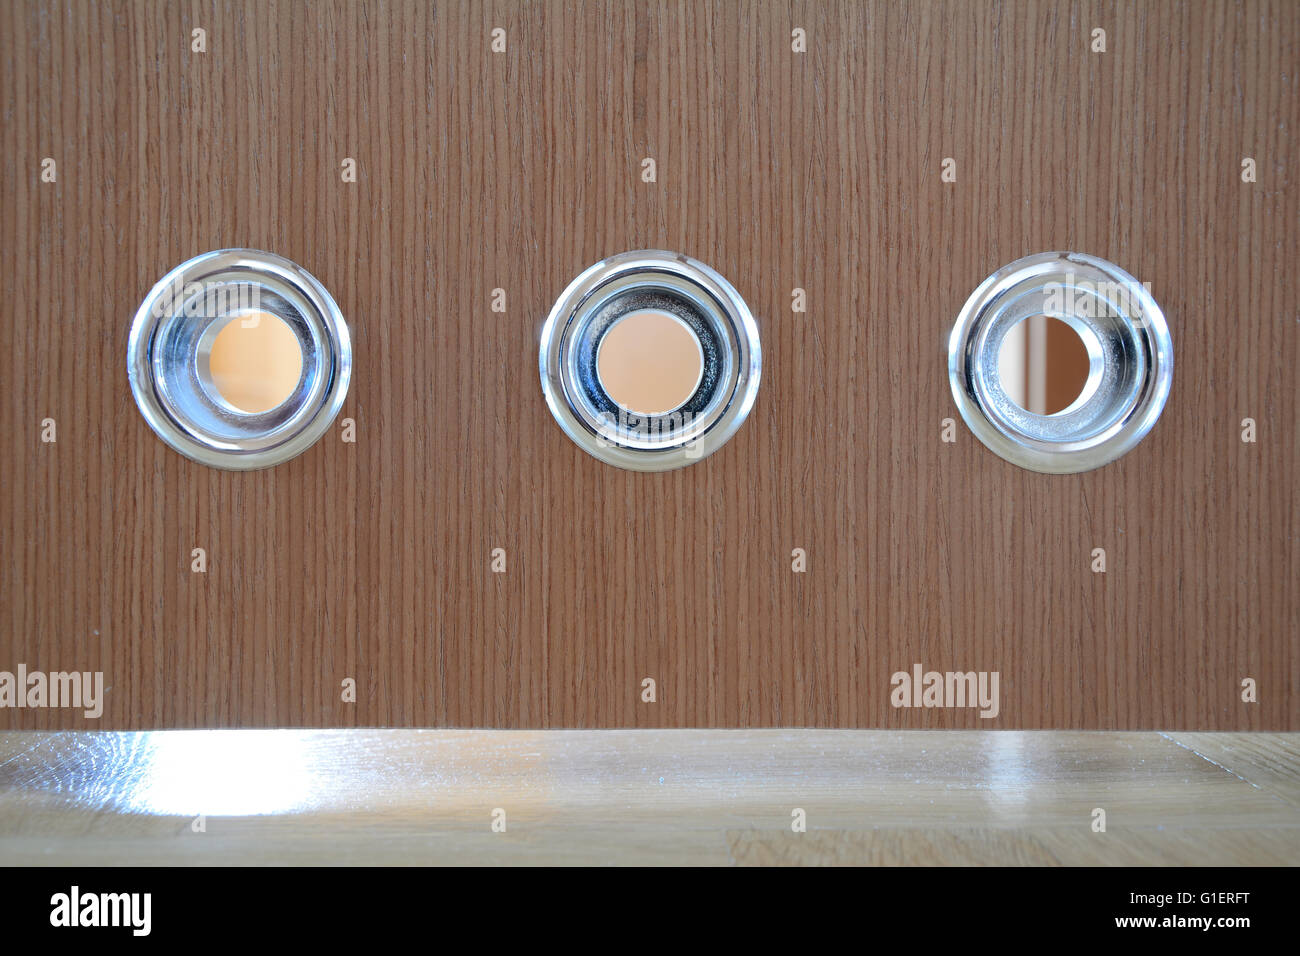 Round silver vents in brown wooden bathroom door. Stock Photo